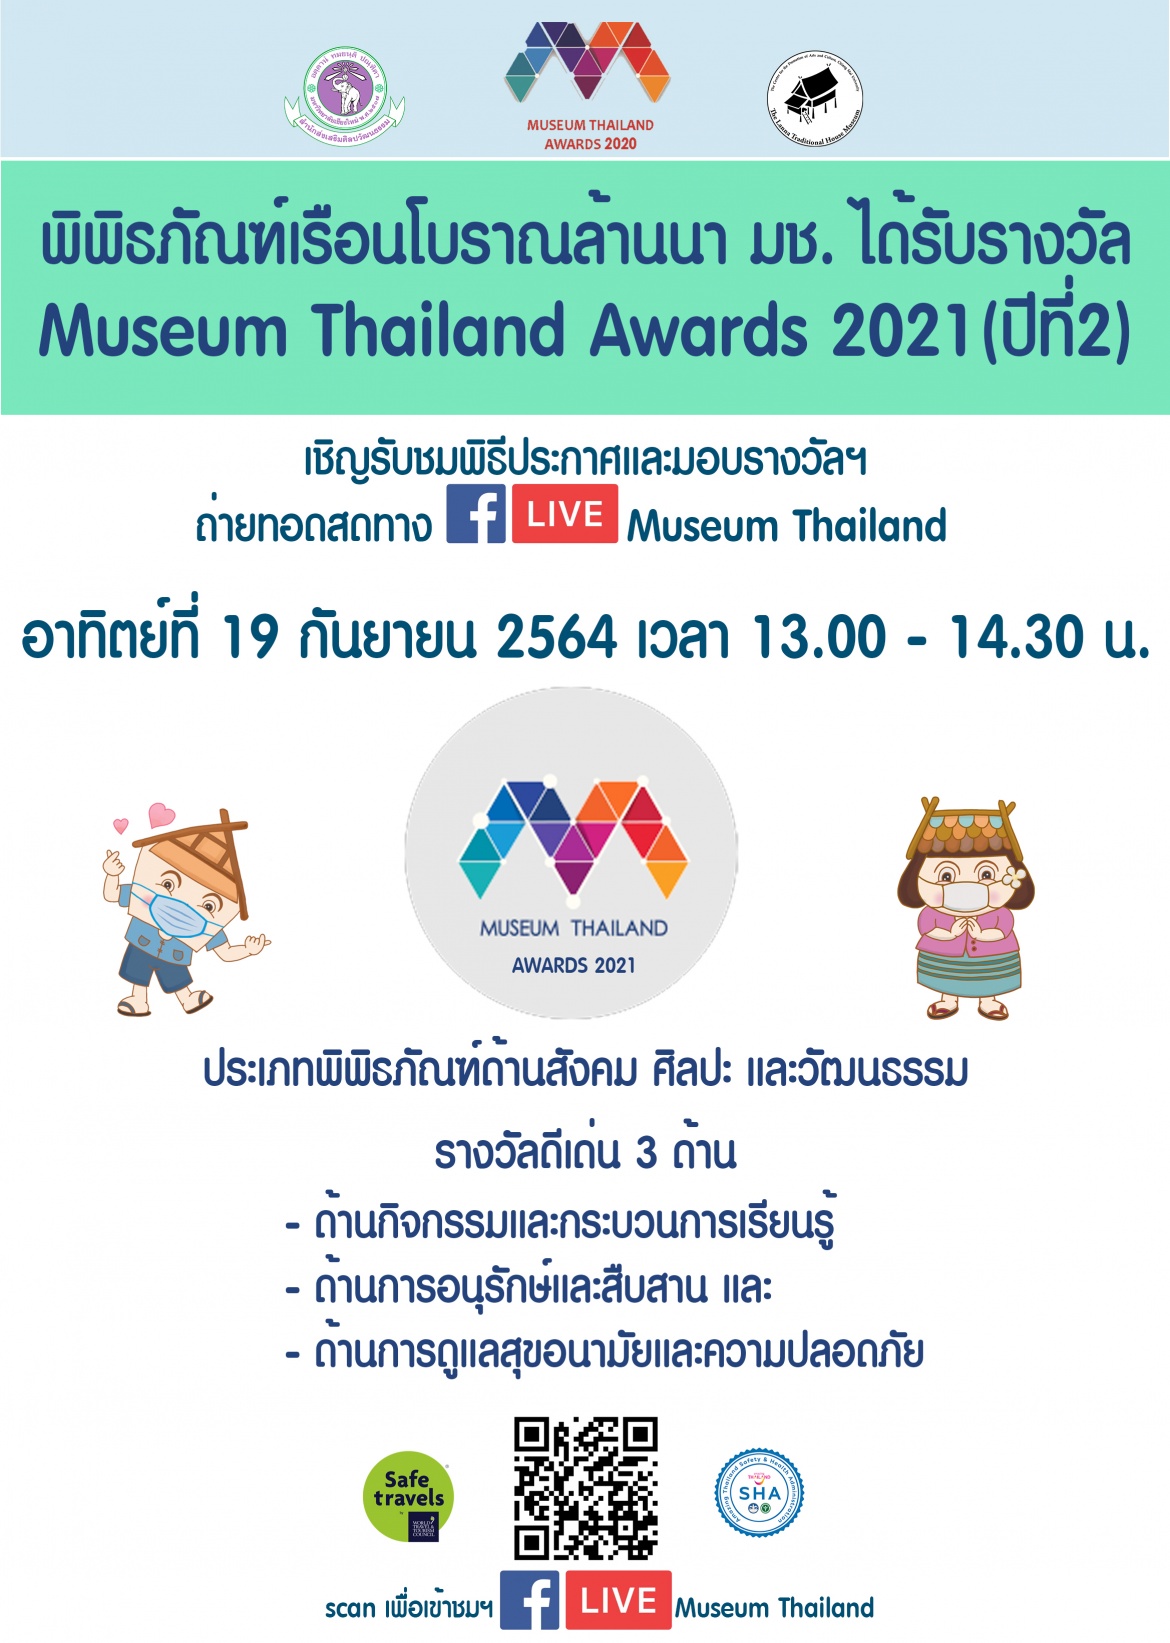 พิพิธภัณฑ์เรือนโบราณล้านนา มช. ได้รับรางวัล Museum Thailand Awards 2021 (ปีที่ 2) 